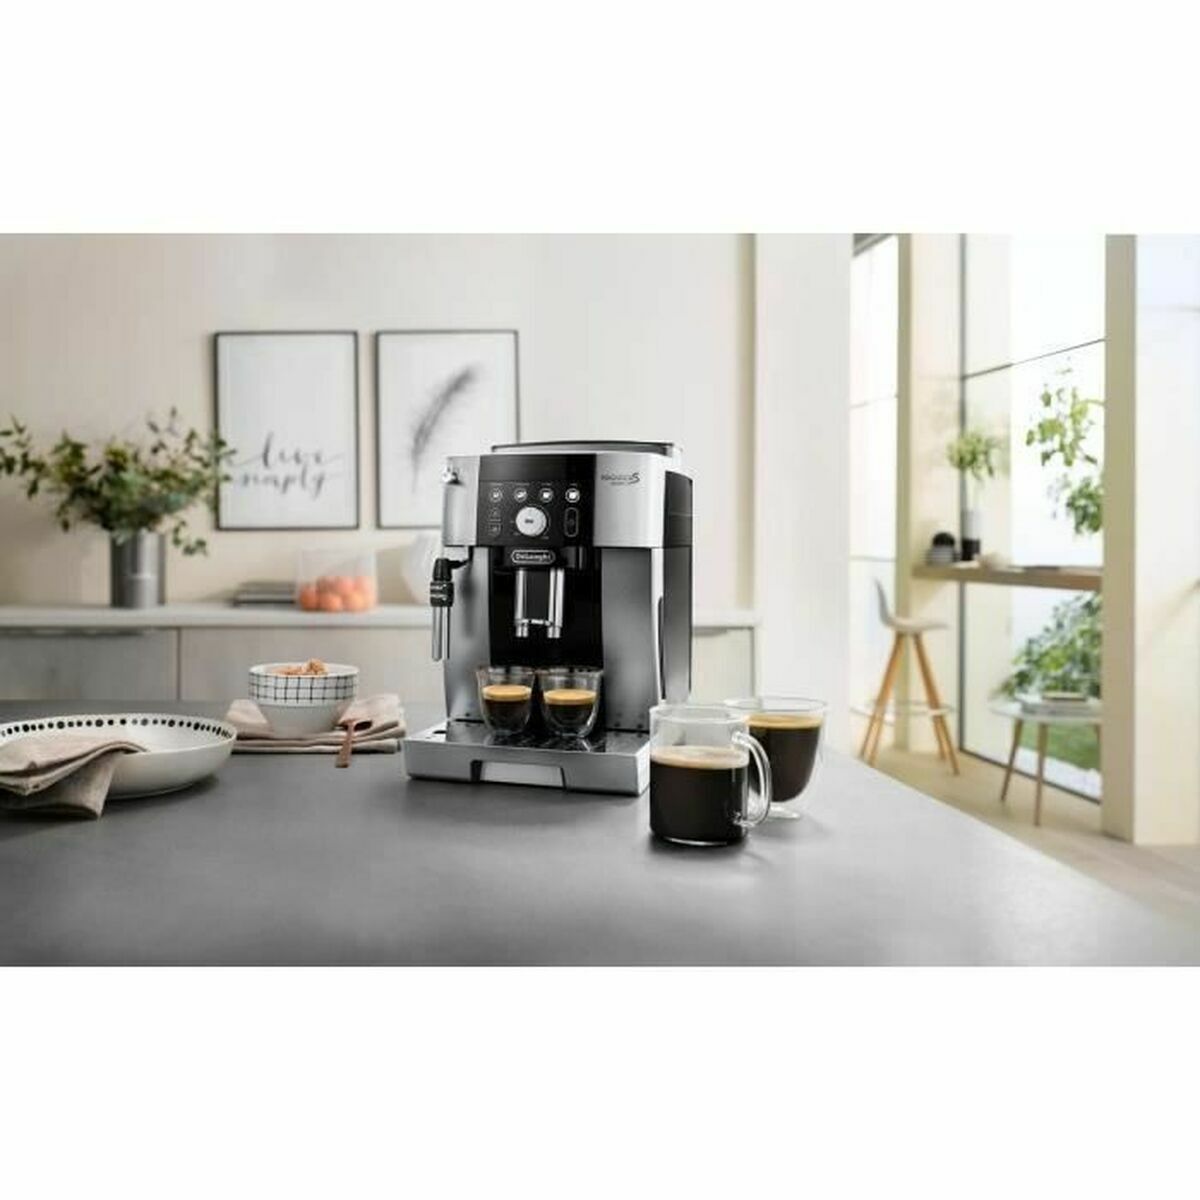 Superautomatische Kaffeemaschine DeLonghi Schwarz Silberfarben 15 bar 1,8 L - CA International  